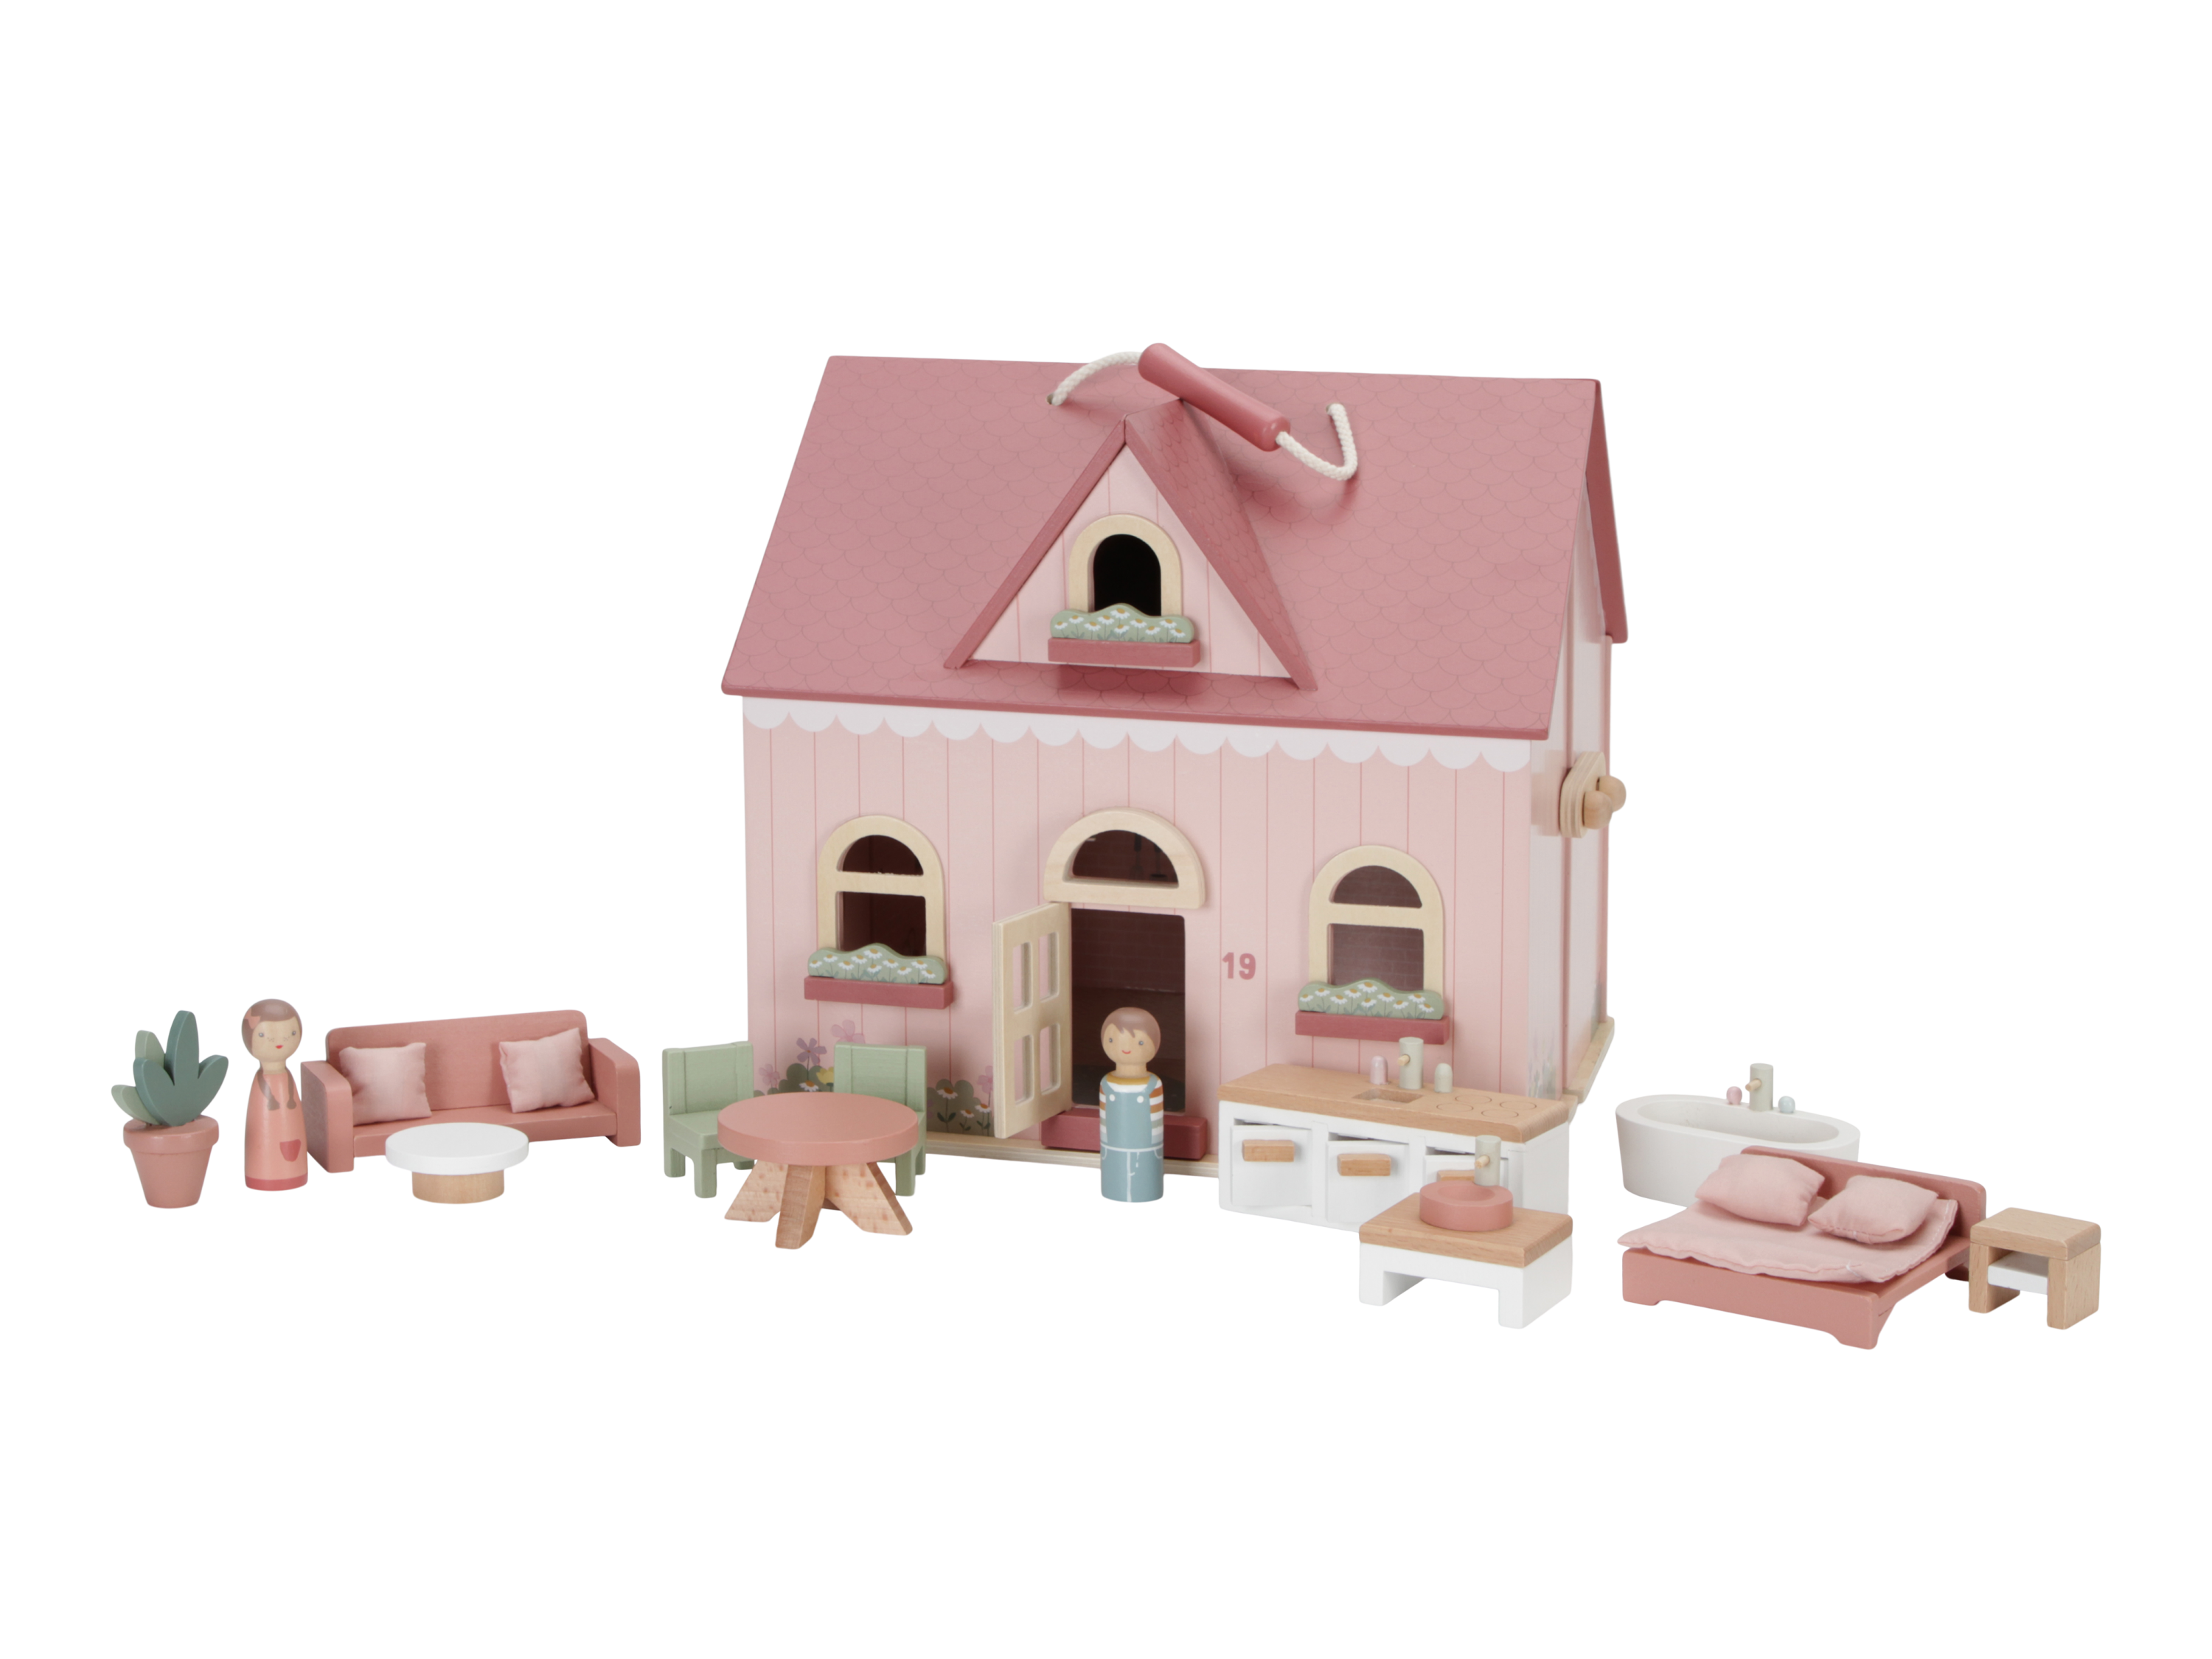 Domeček pro panenky dřevěný přenosný